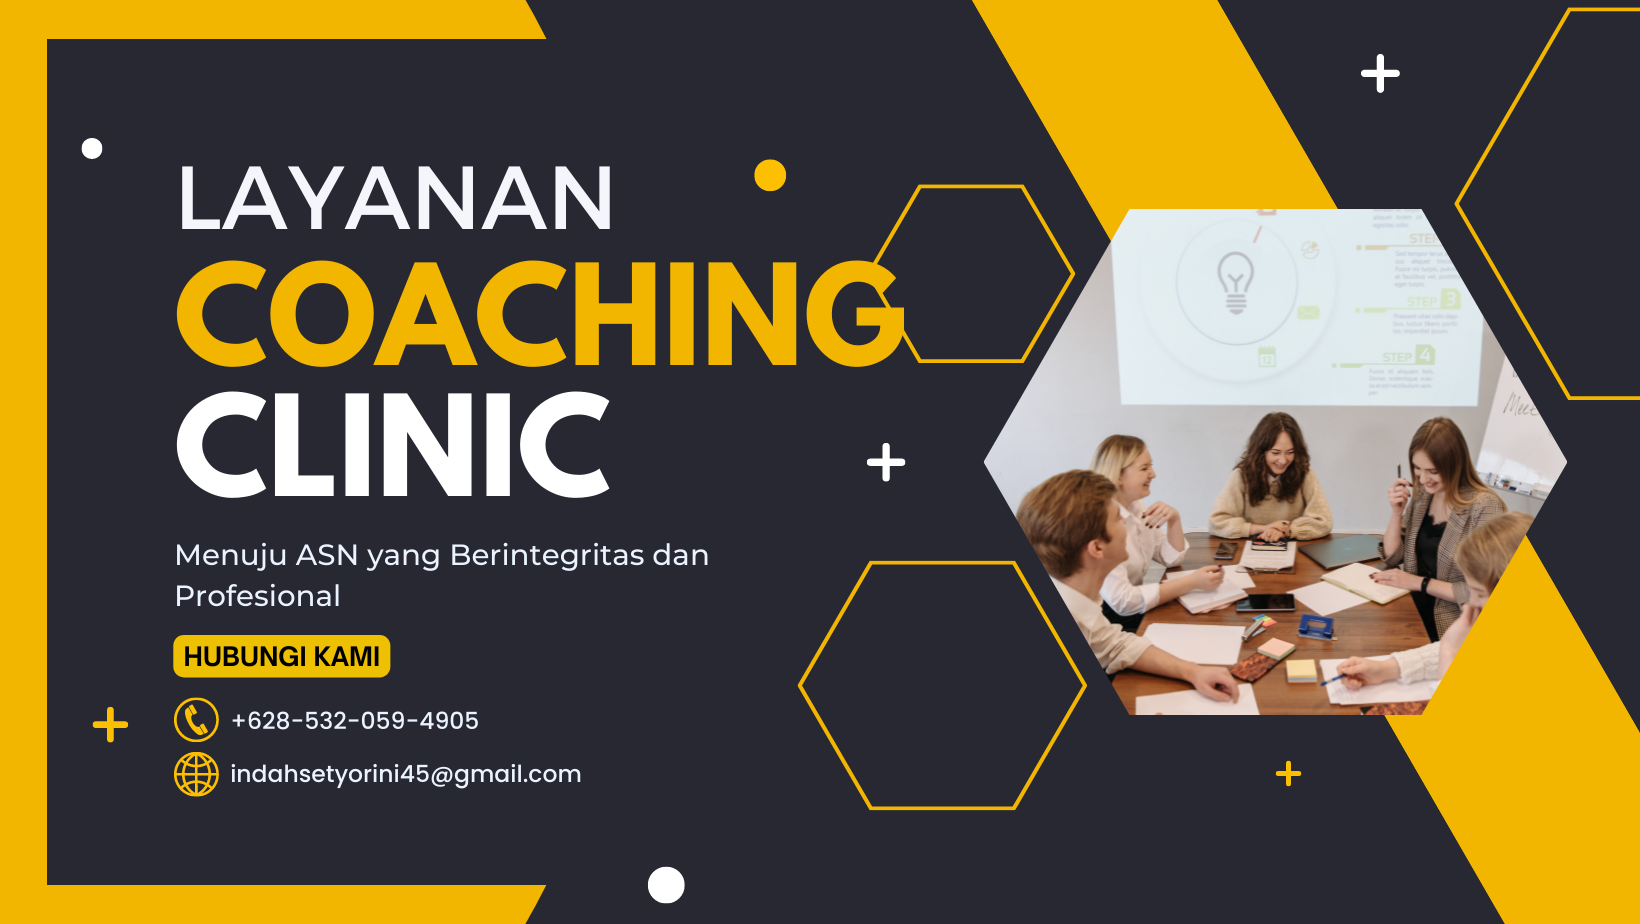 Layanan Coaching Clinic